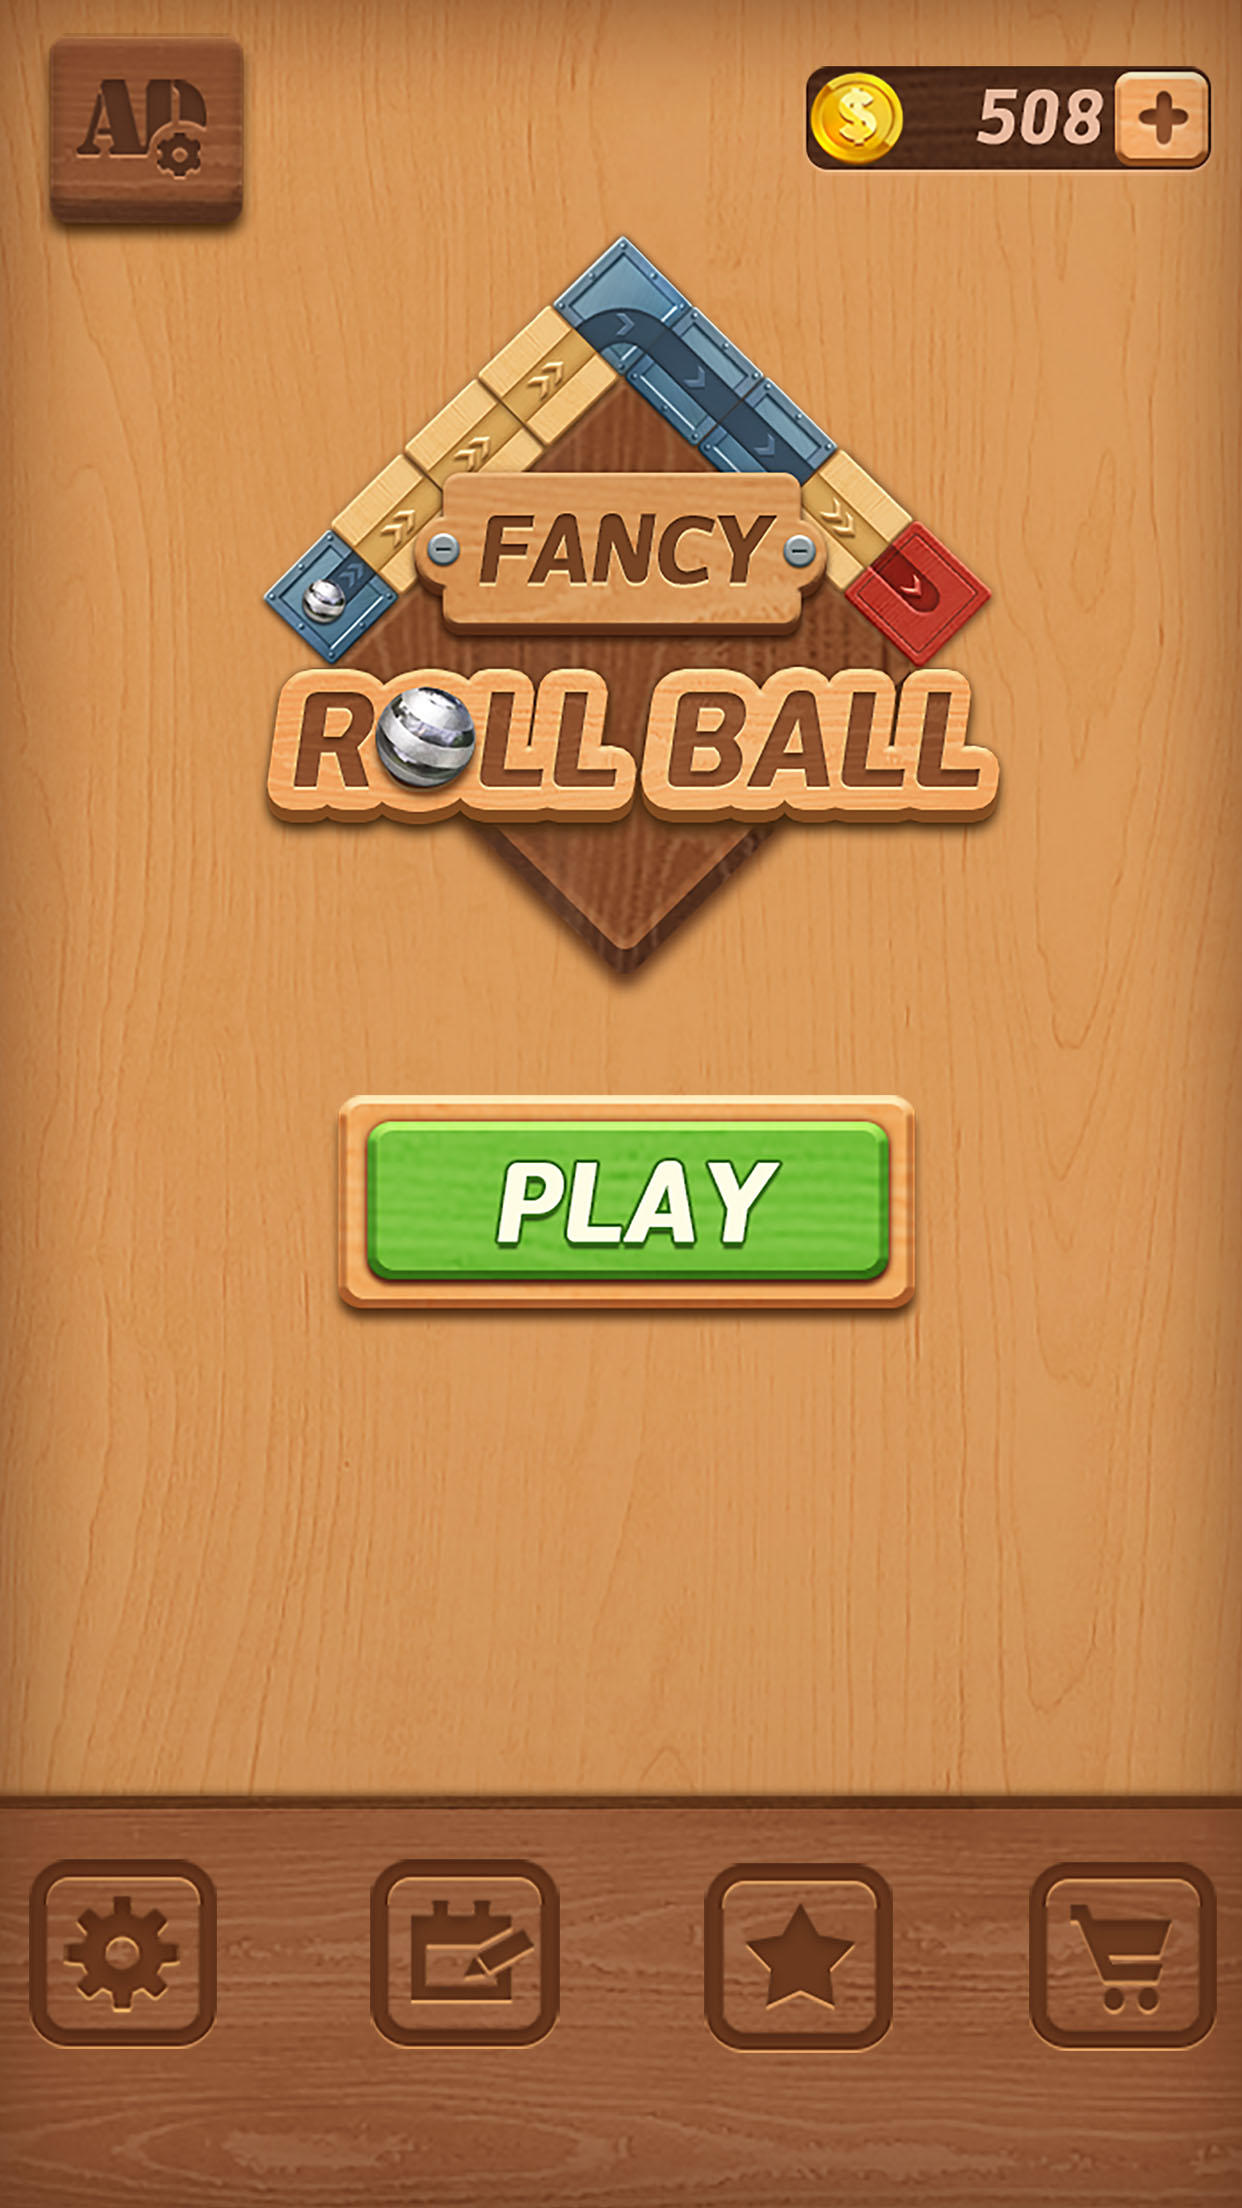 Screenshot 1 of Fancy Roll Ball (ဘီတာ) 1.0.1